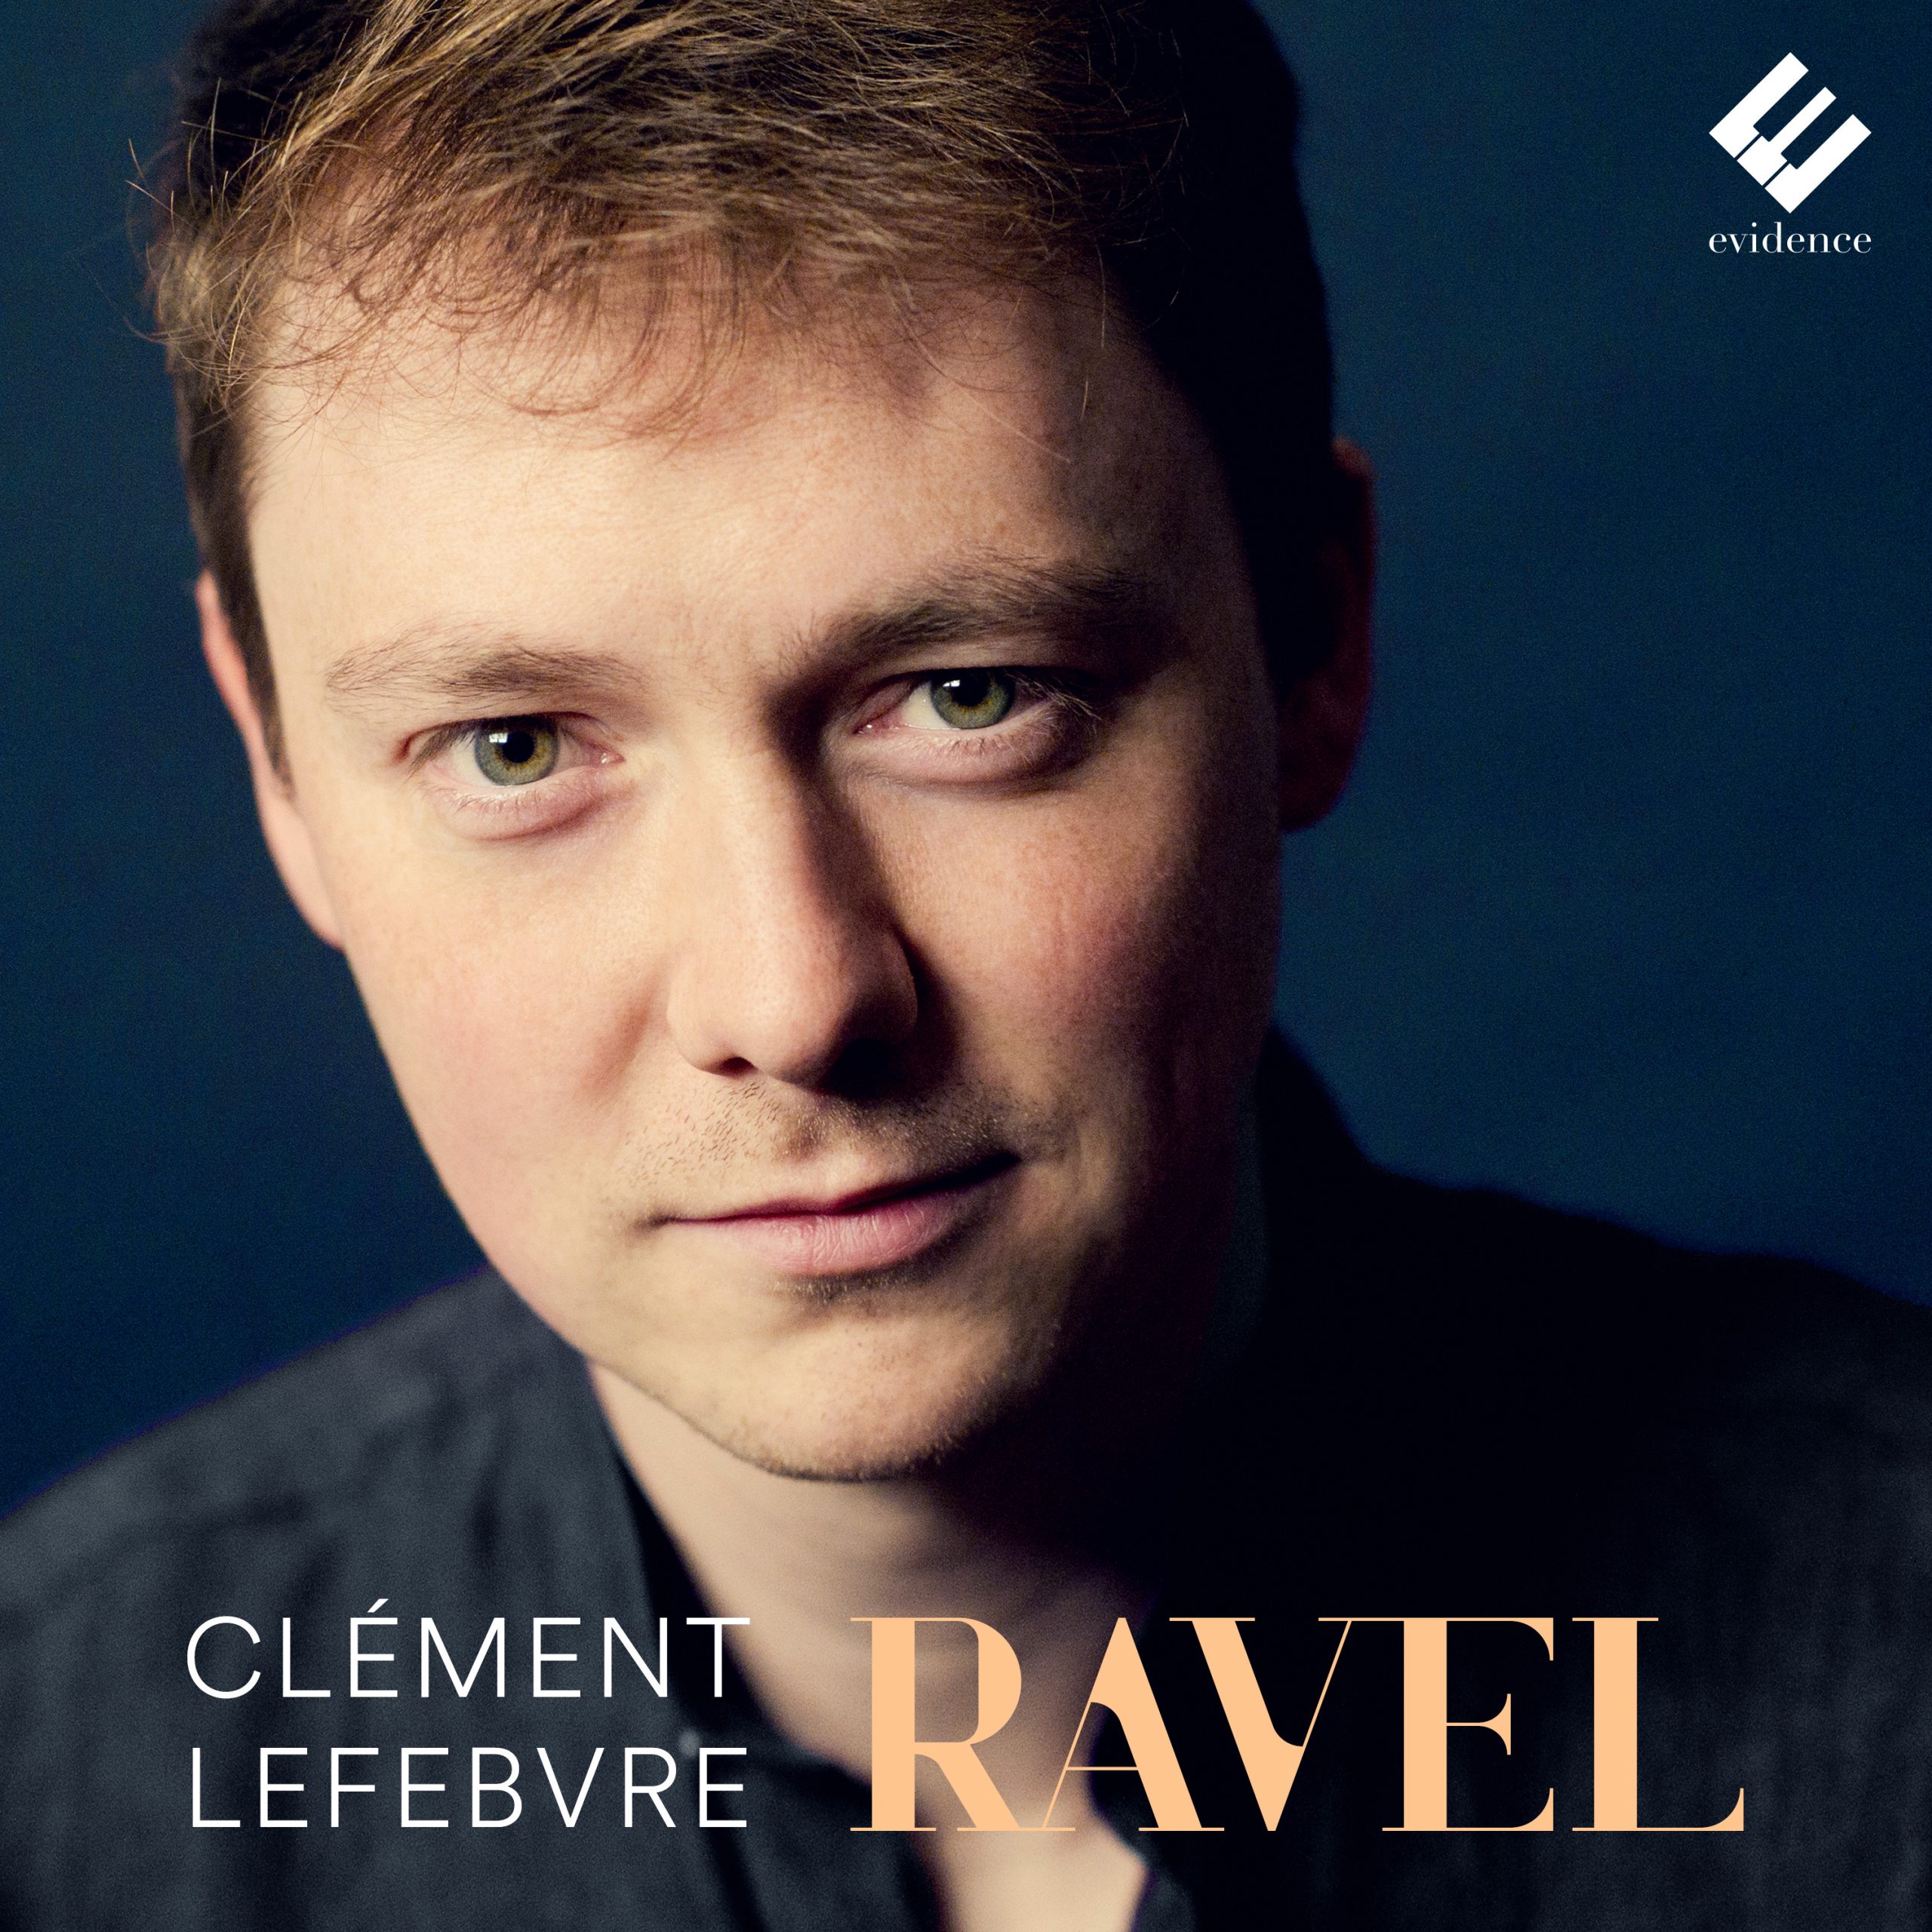 Clément lefebvre Ravel